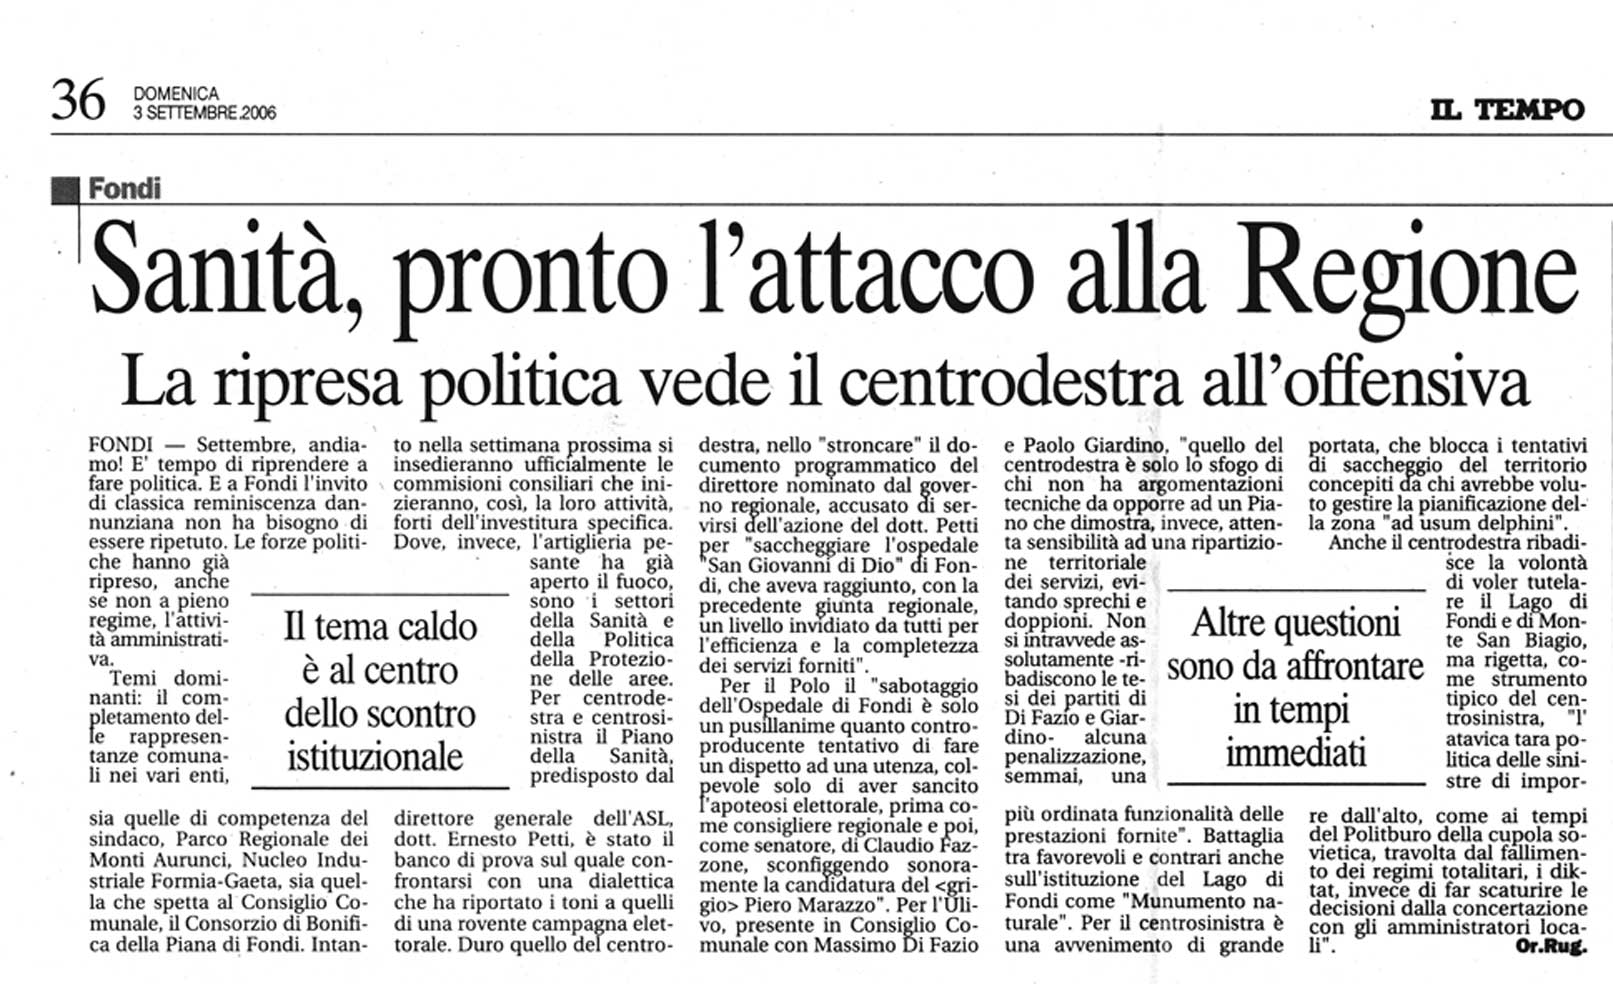 Il Tempo 03.09.2006 Rassegna stampa sanita' provincia Latina Ordine Medici Latina